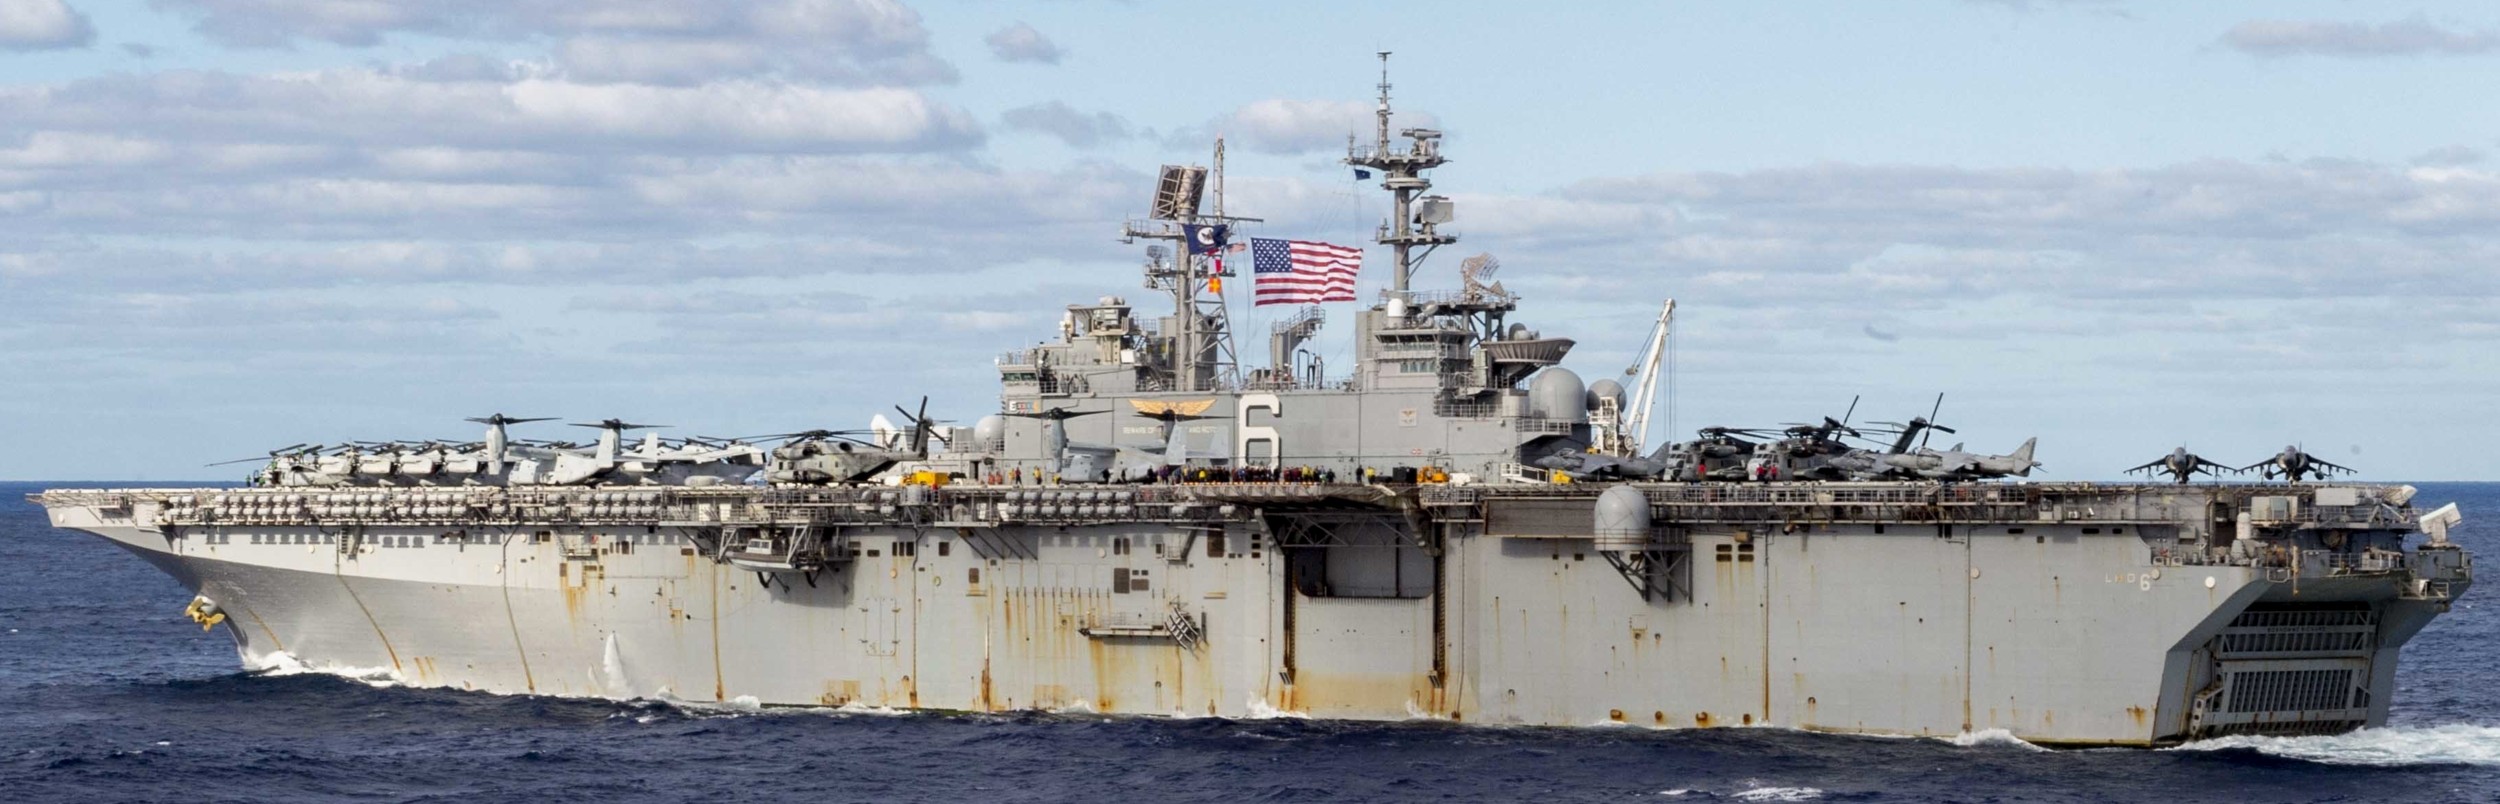 lhd-6 uss bonhomme richard amphibious assault ship landing helicopter dock wasp class us navy 283